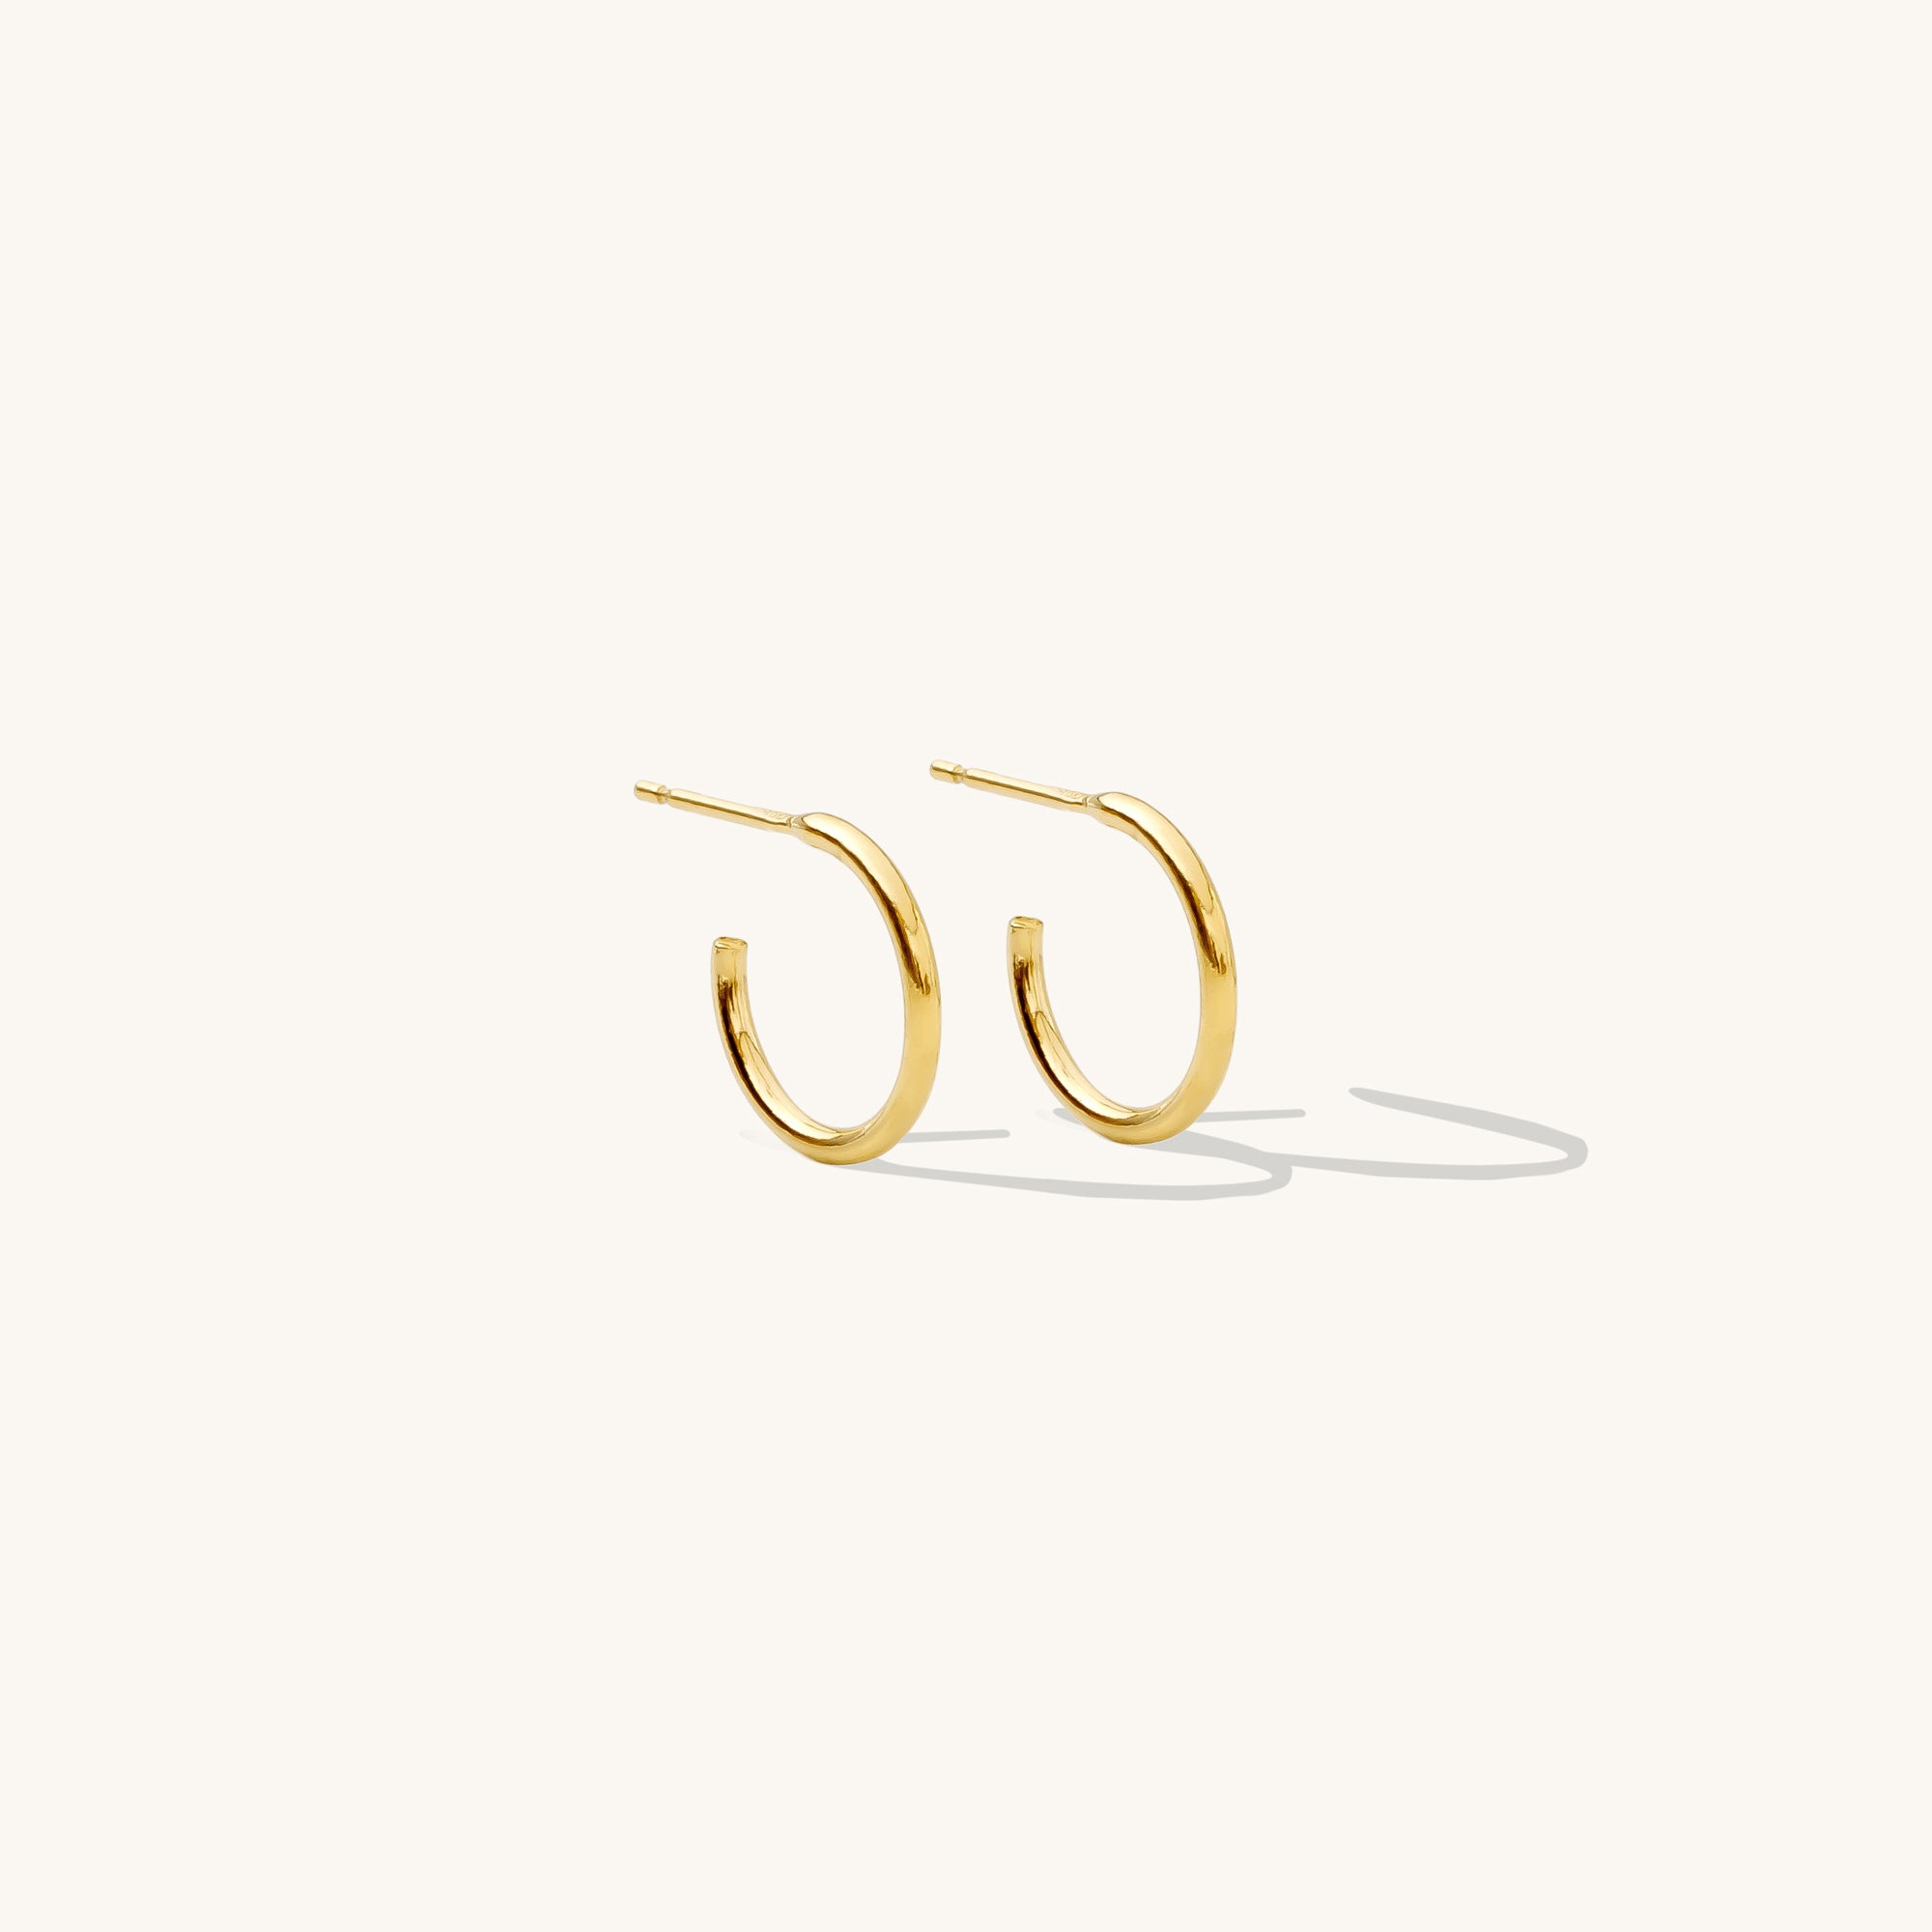 Diamond Bali Flat Back Studs Earring in 14K Solid Gold/Pair, Women's by Gorjana